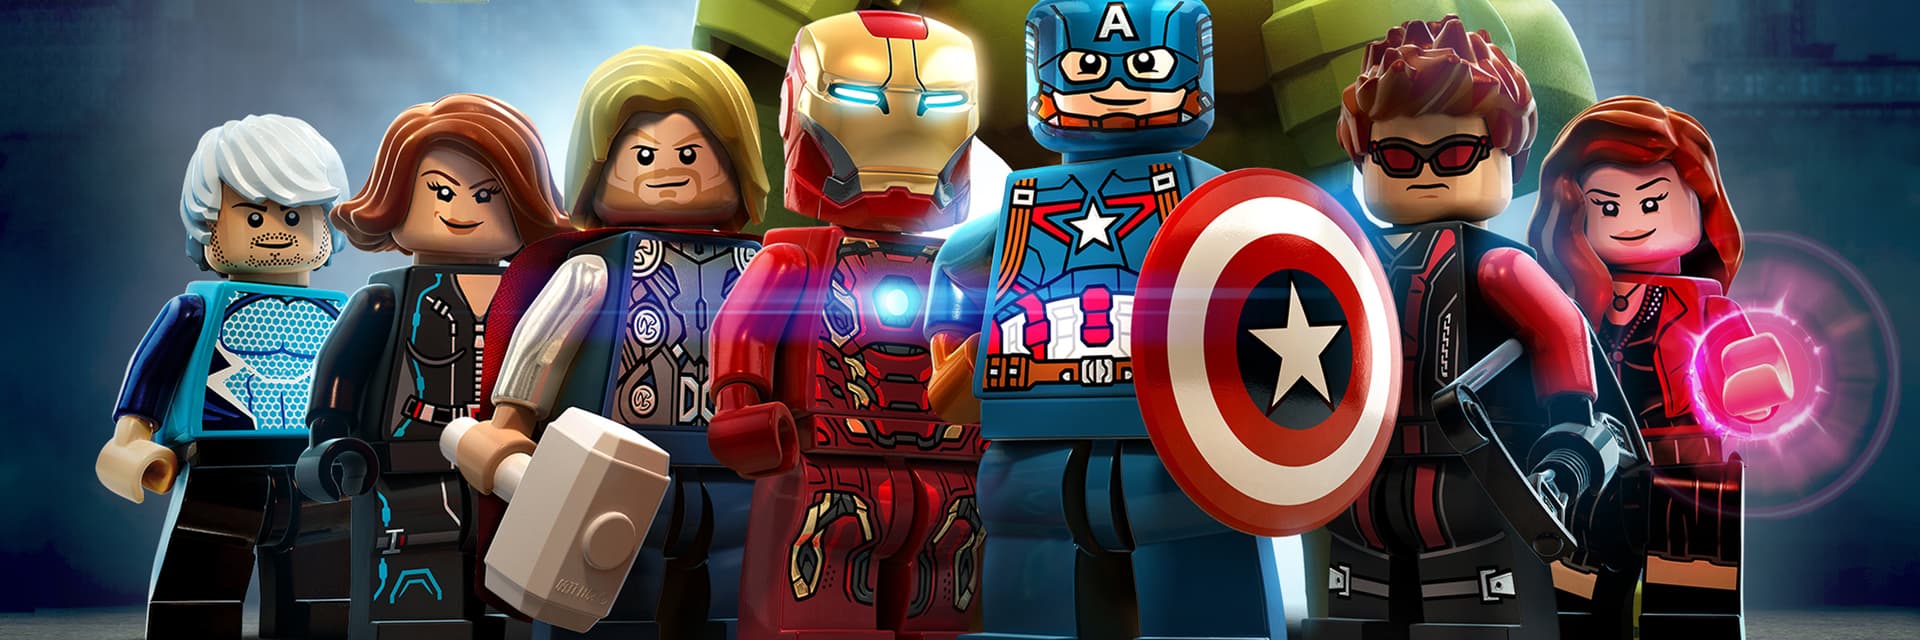 Lego Marvel's Avengers Game Poster